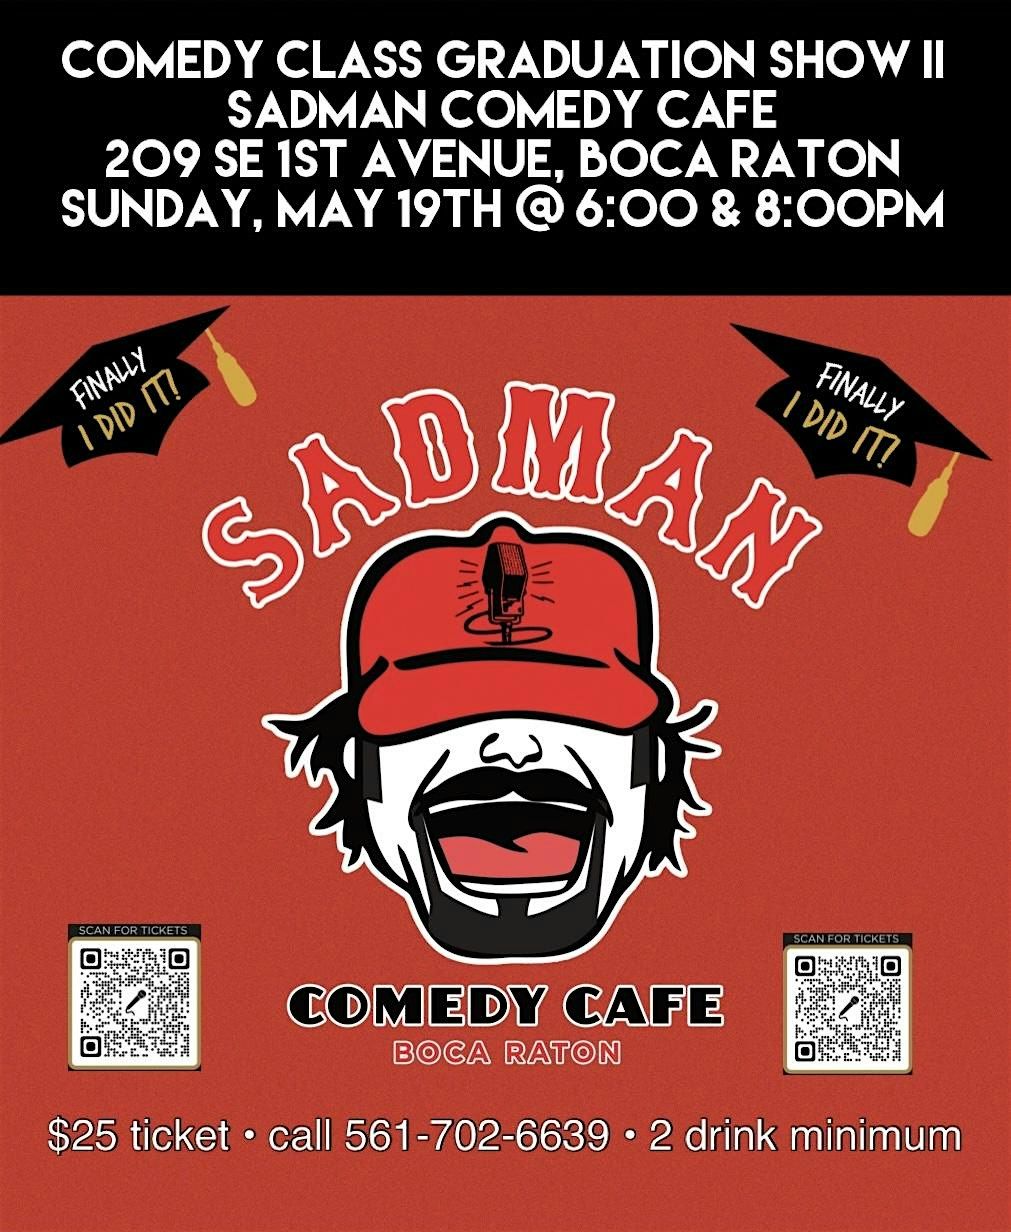 Comedy Class Graduation Show II At Sadman Comedy Cafe, Boca Raton,8:00 Show